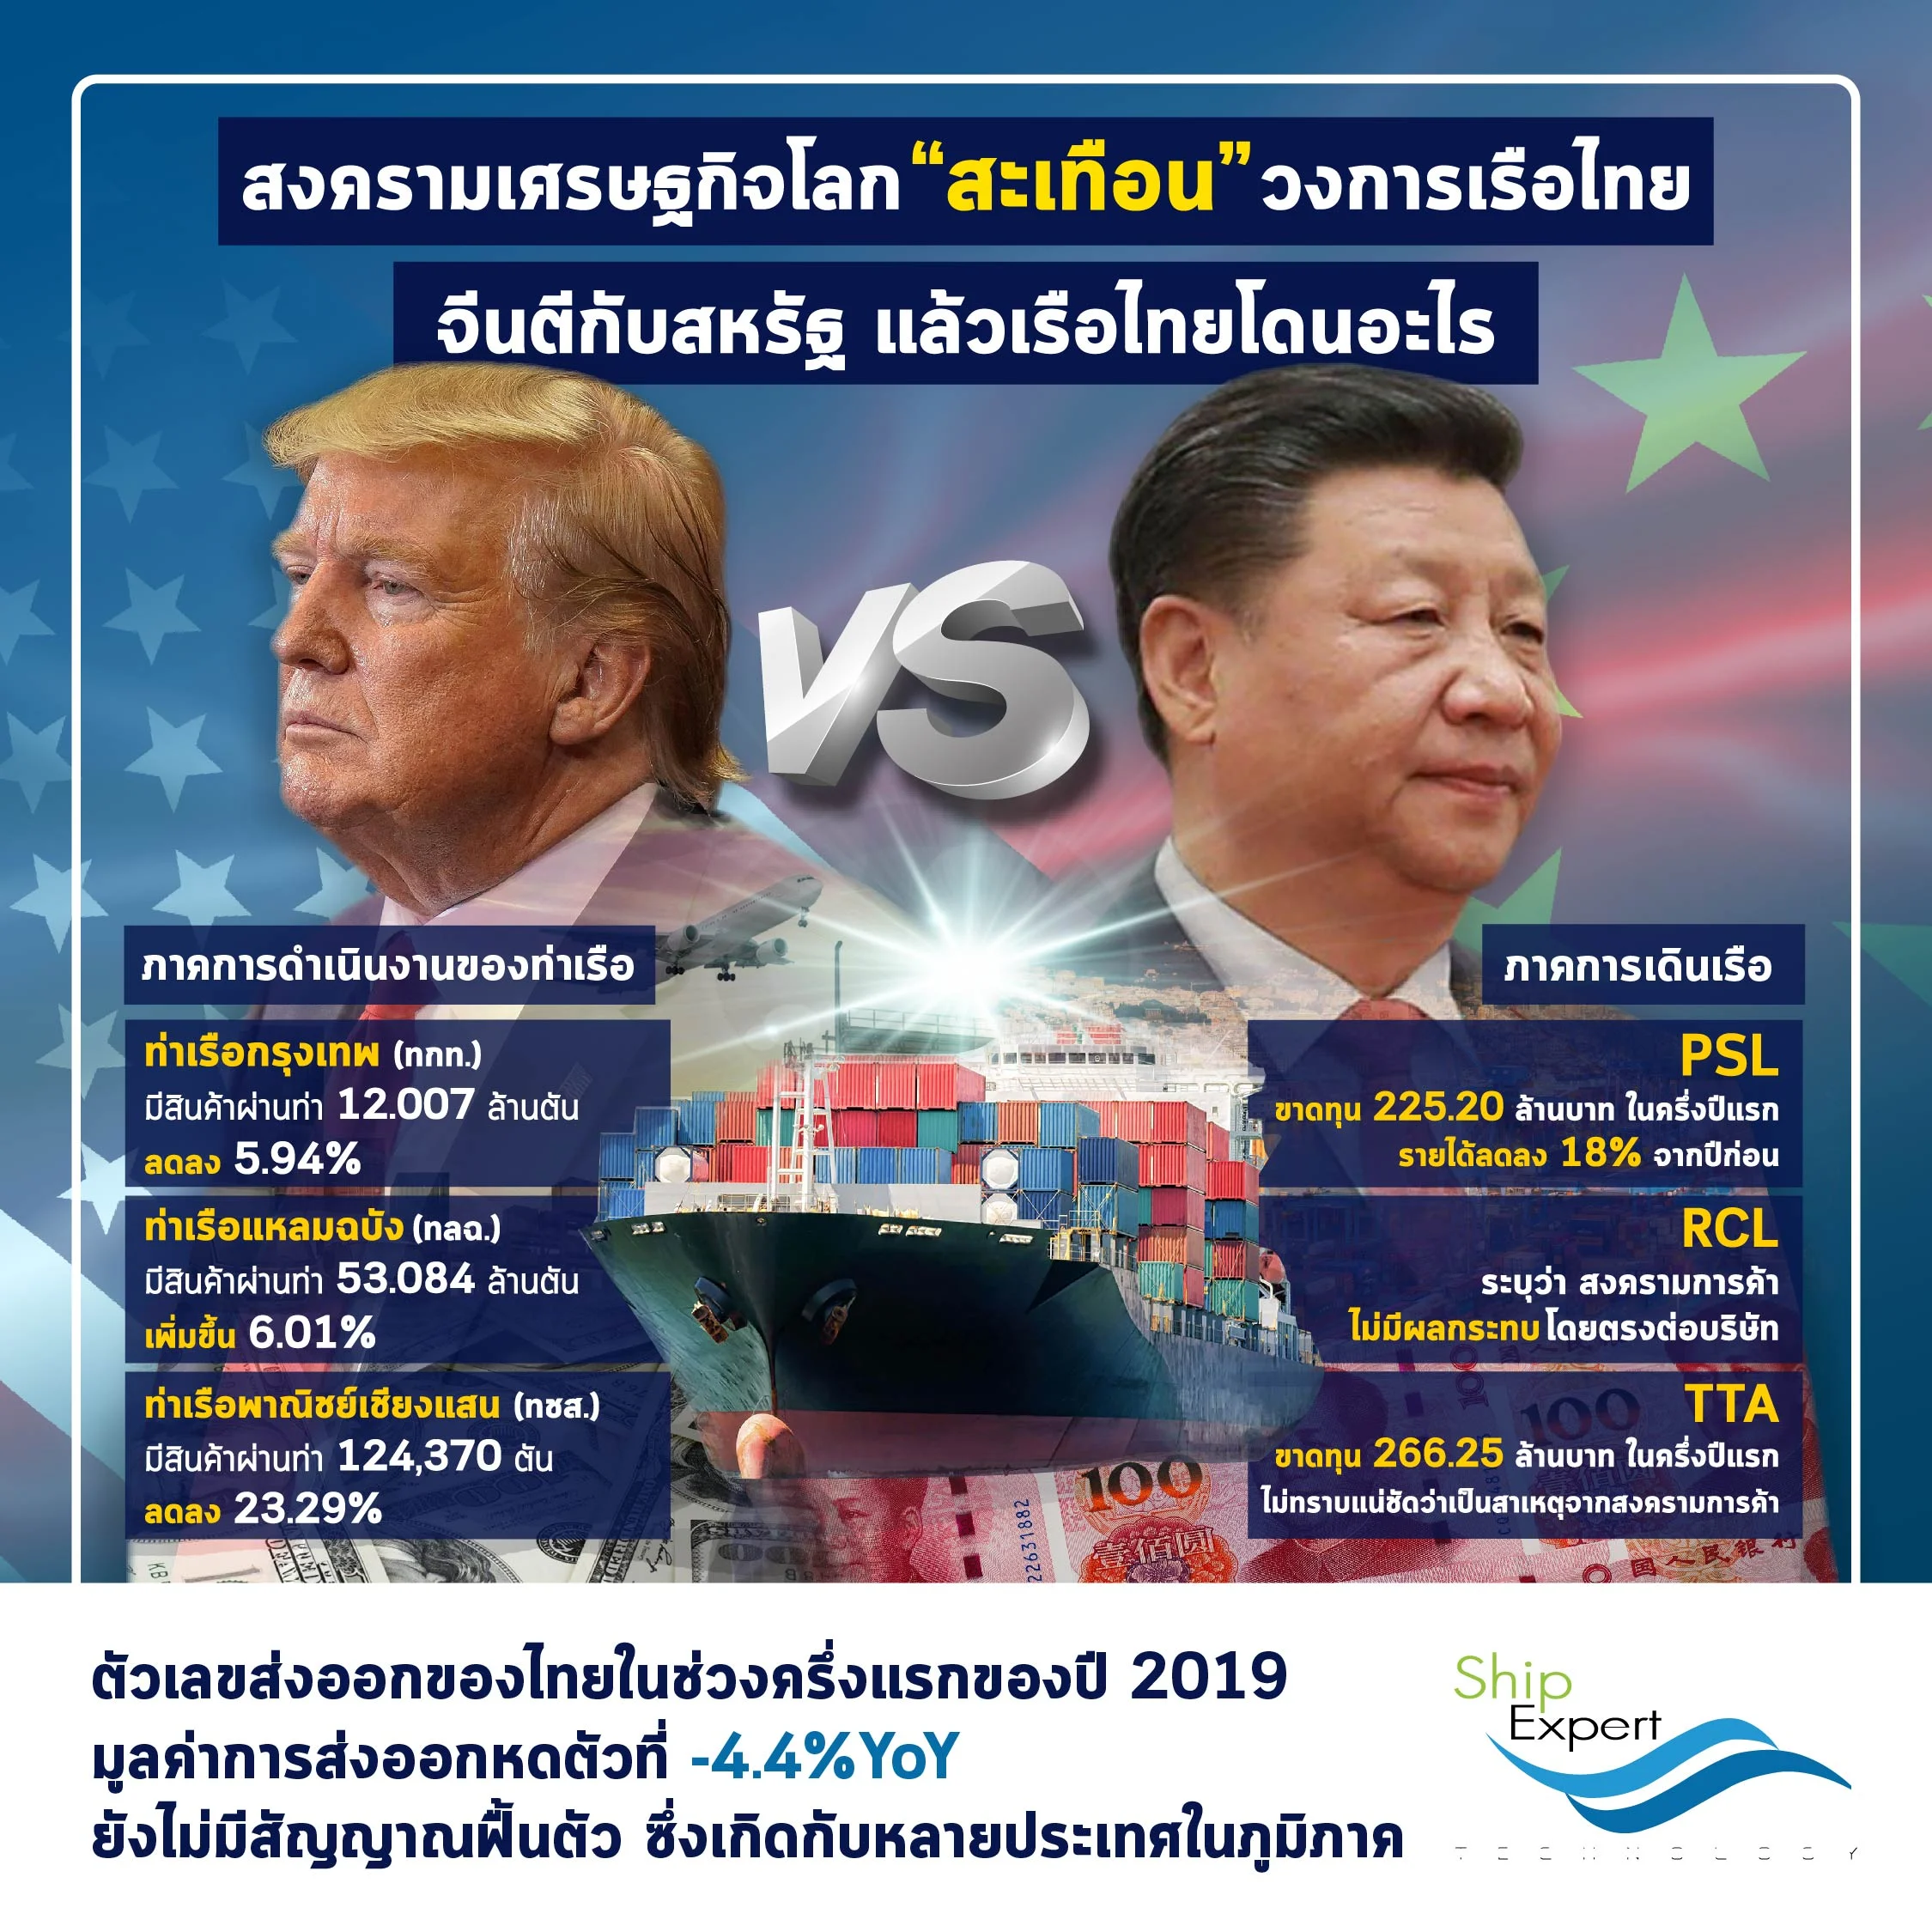 สงครามเศรษฐกิจโลกสะเทือนวงการเรือไทย เมื่อจีนตีกับสหรัฐฯ แล้วเรือไทยโดนอะไร